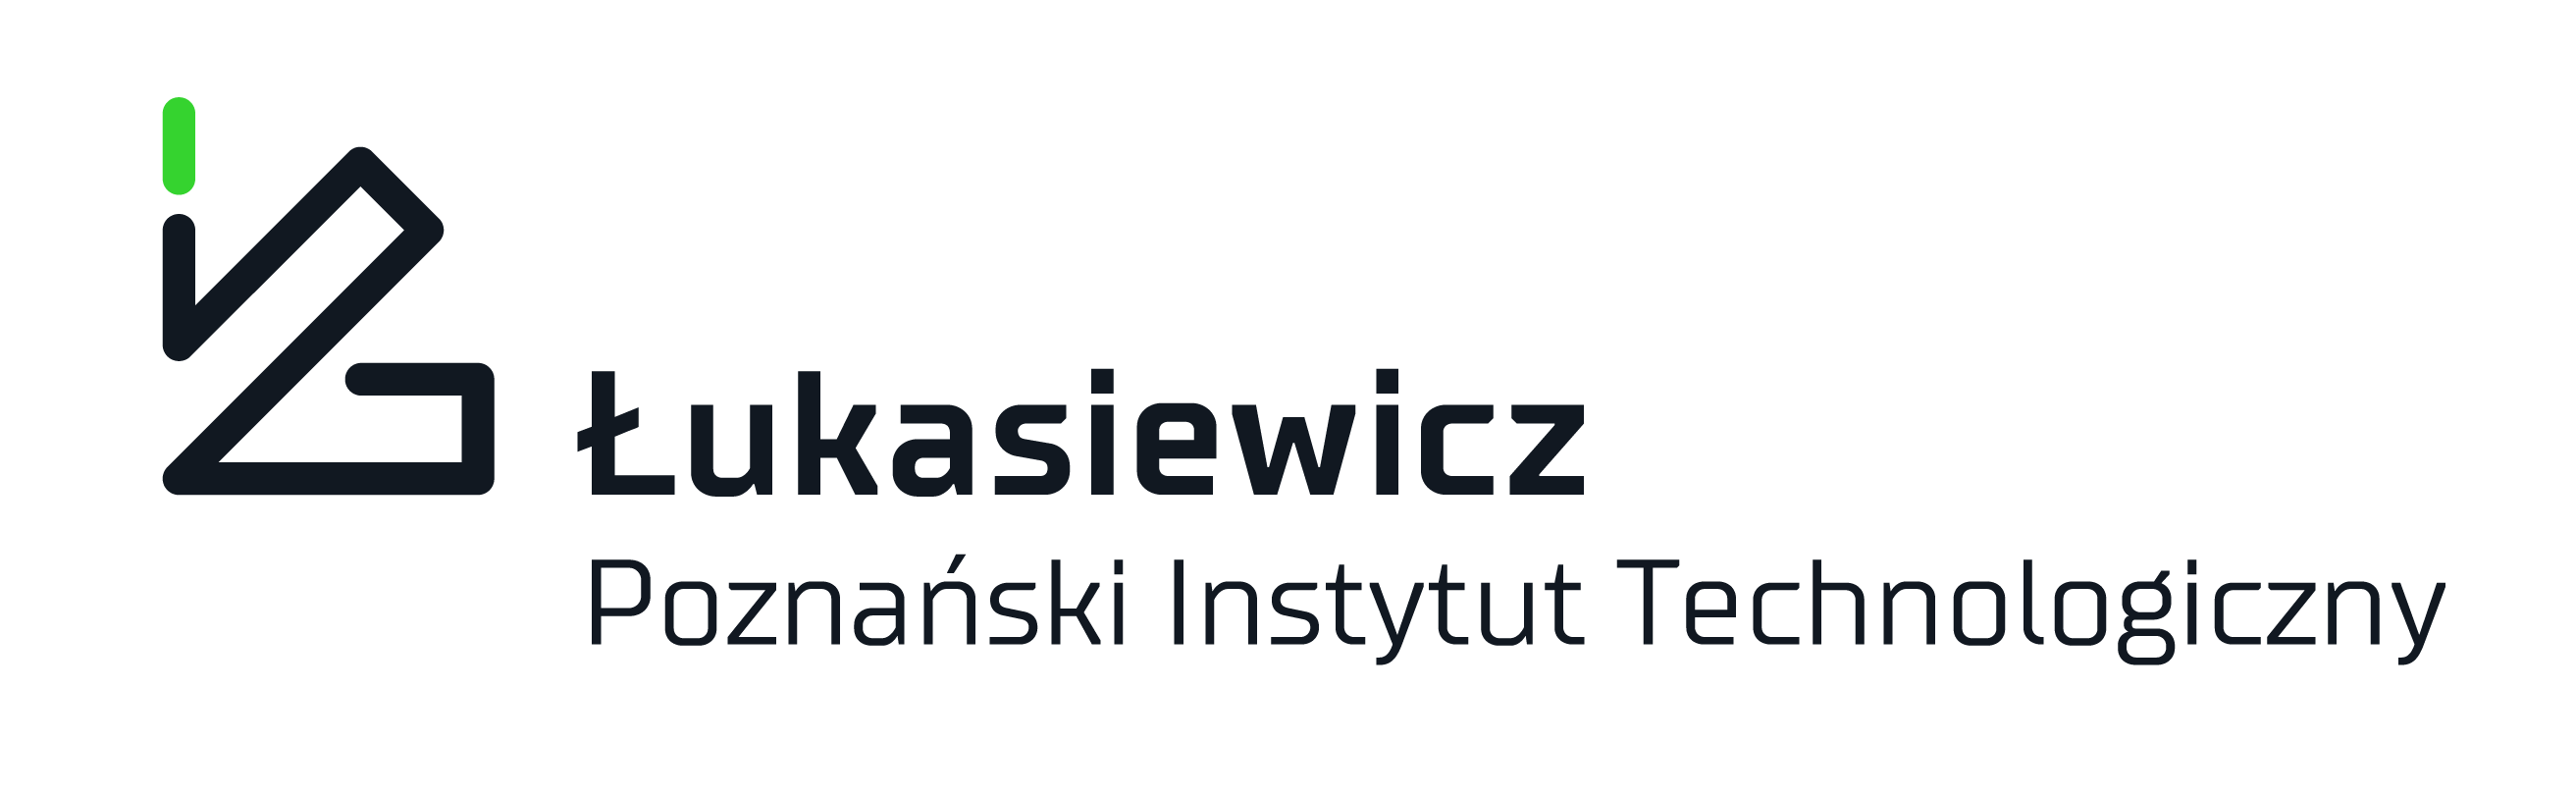 PIT Lukasiewicz logo